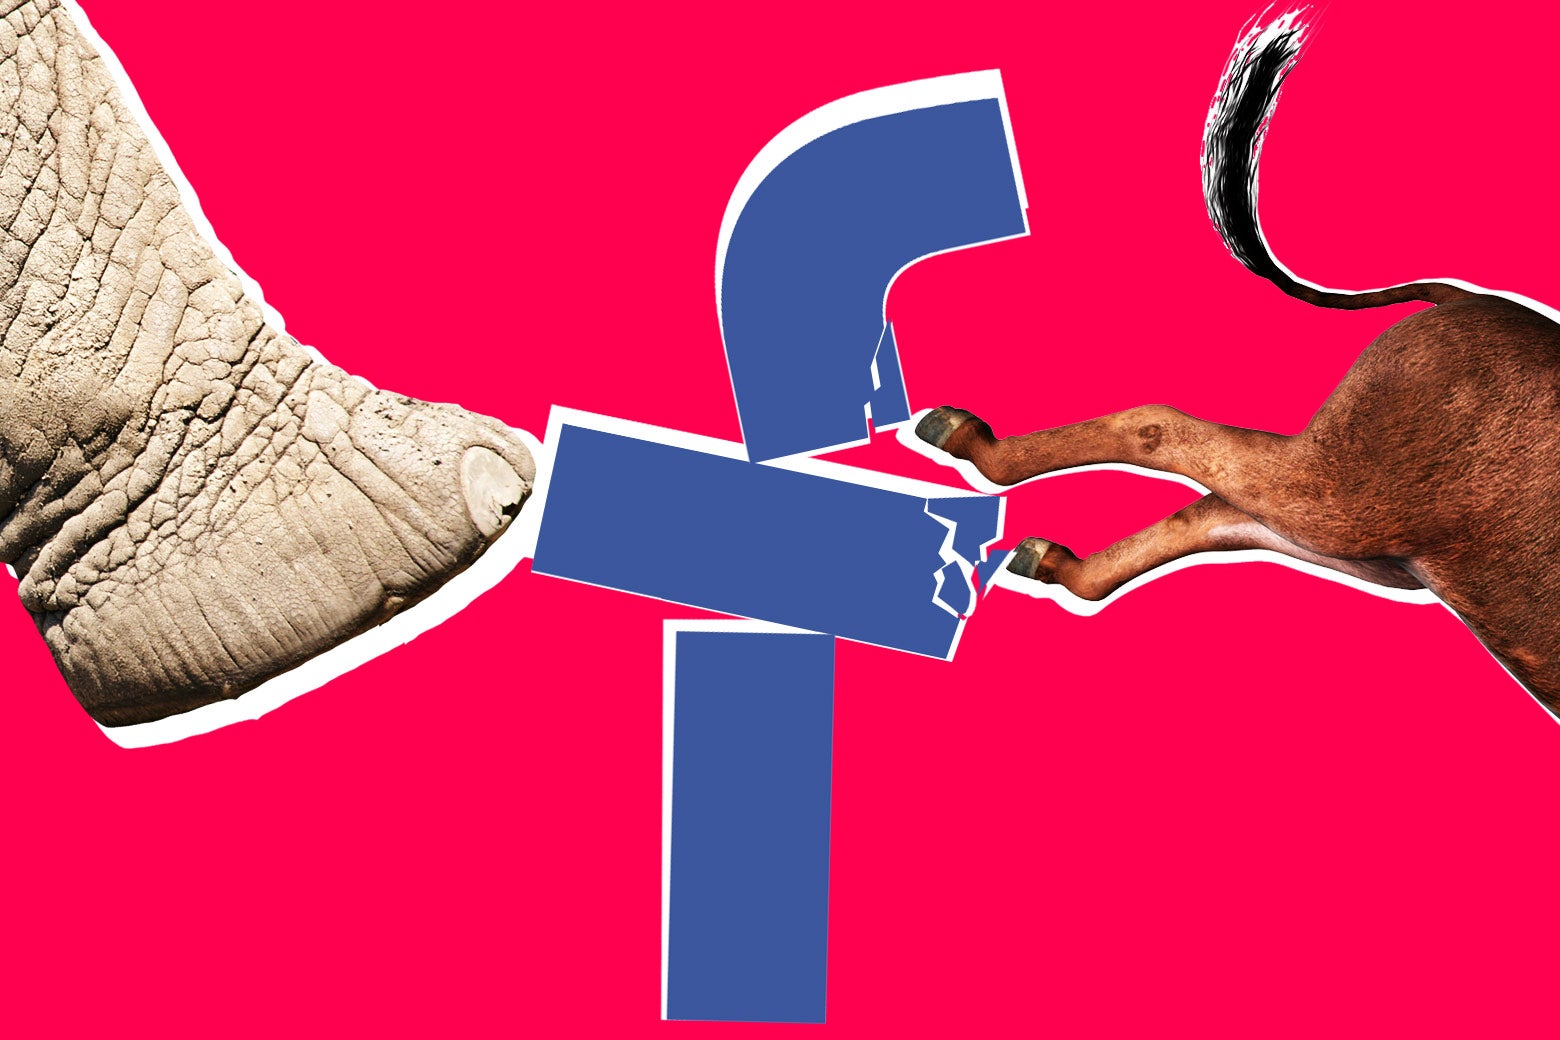 Elephant and donkey kicking Facebook logo.